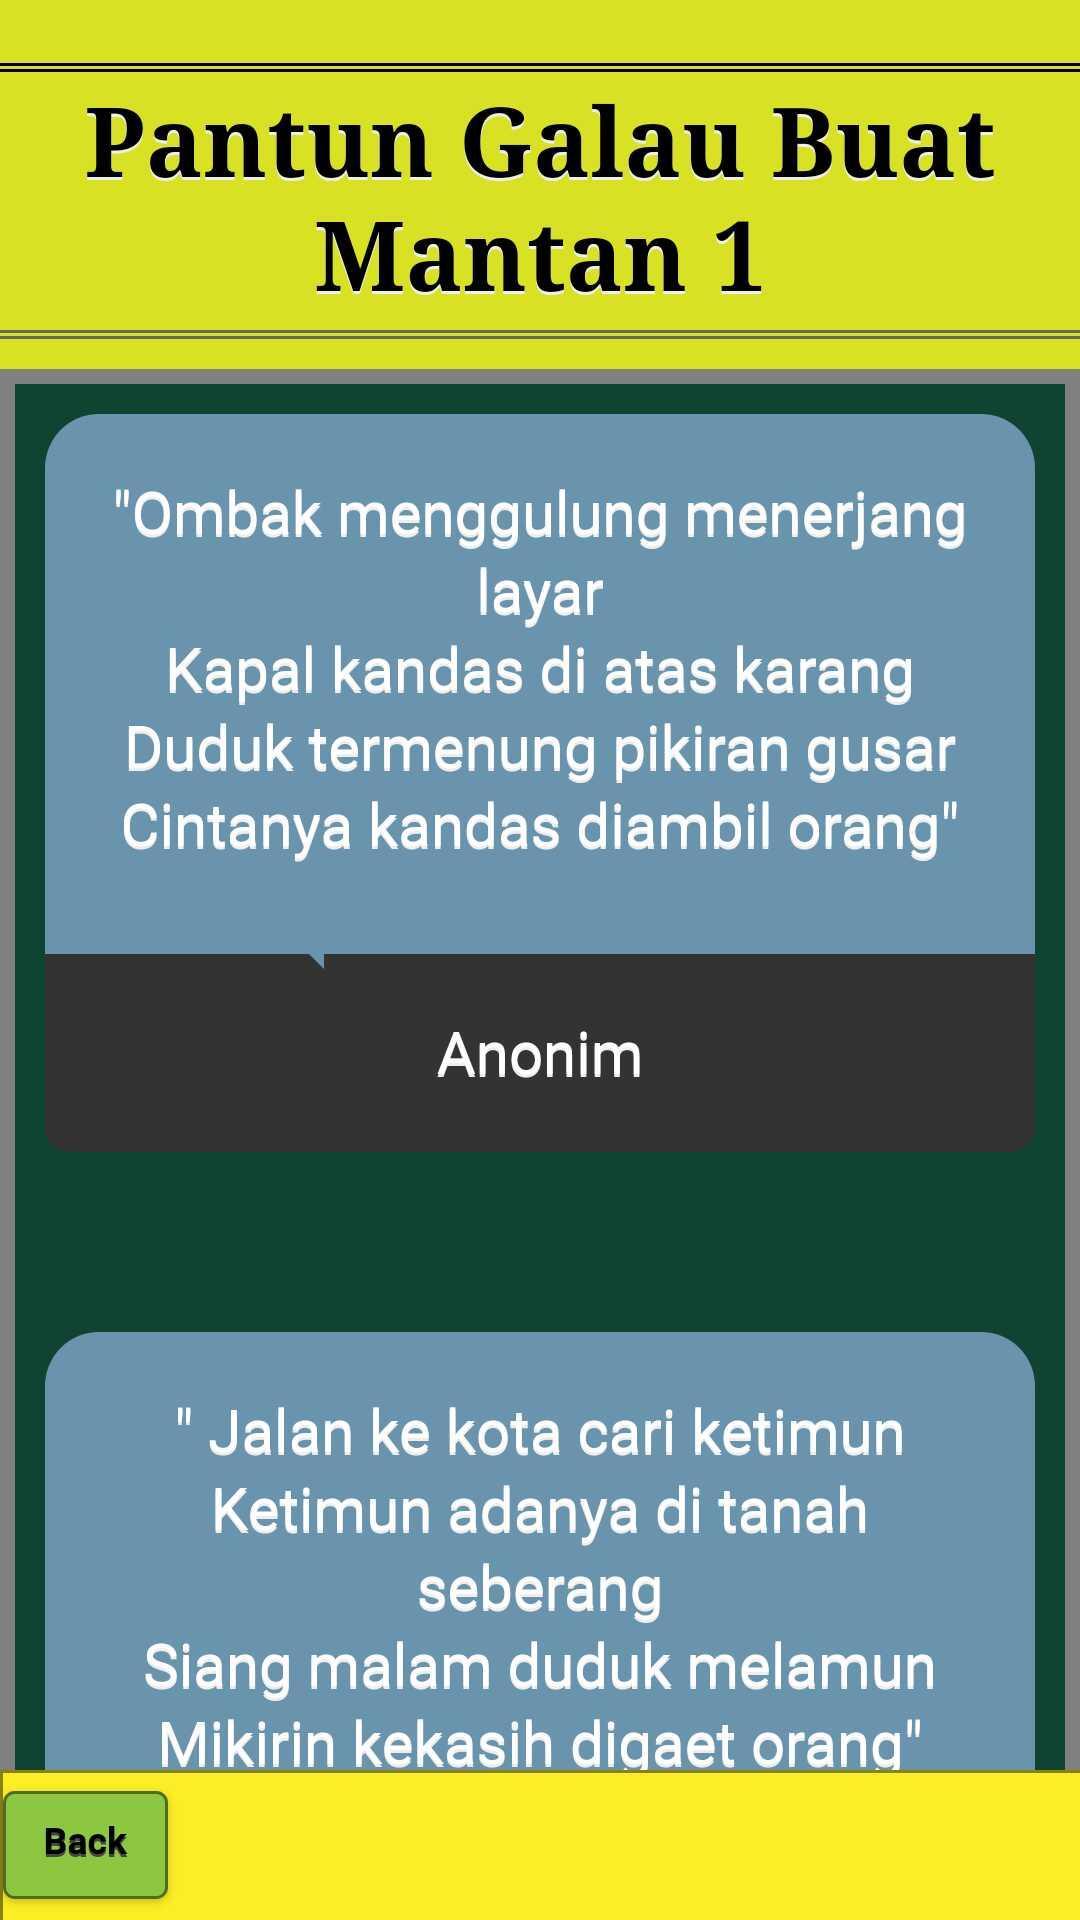 Pantun Buat Mantan Baper Galau Terbaru For Android Apk Download